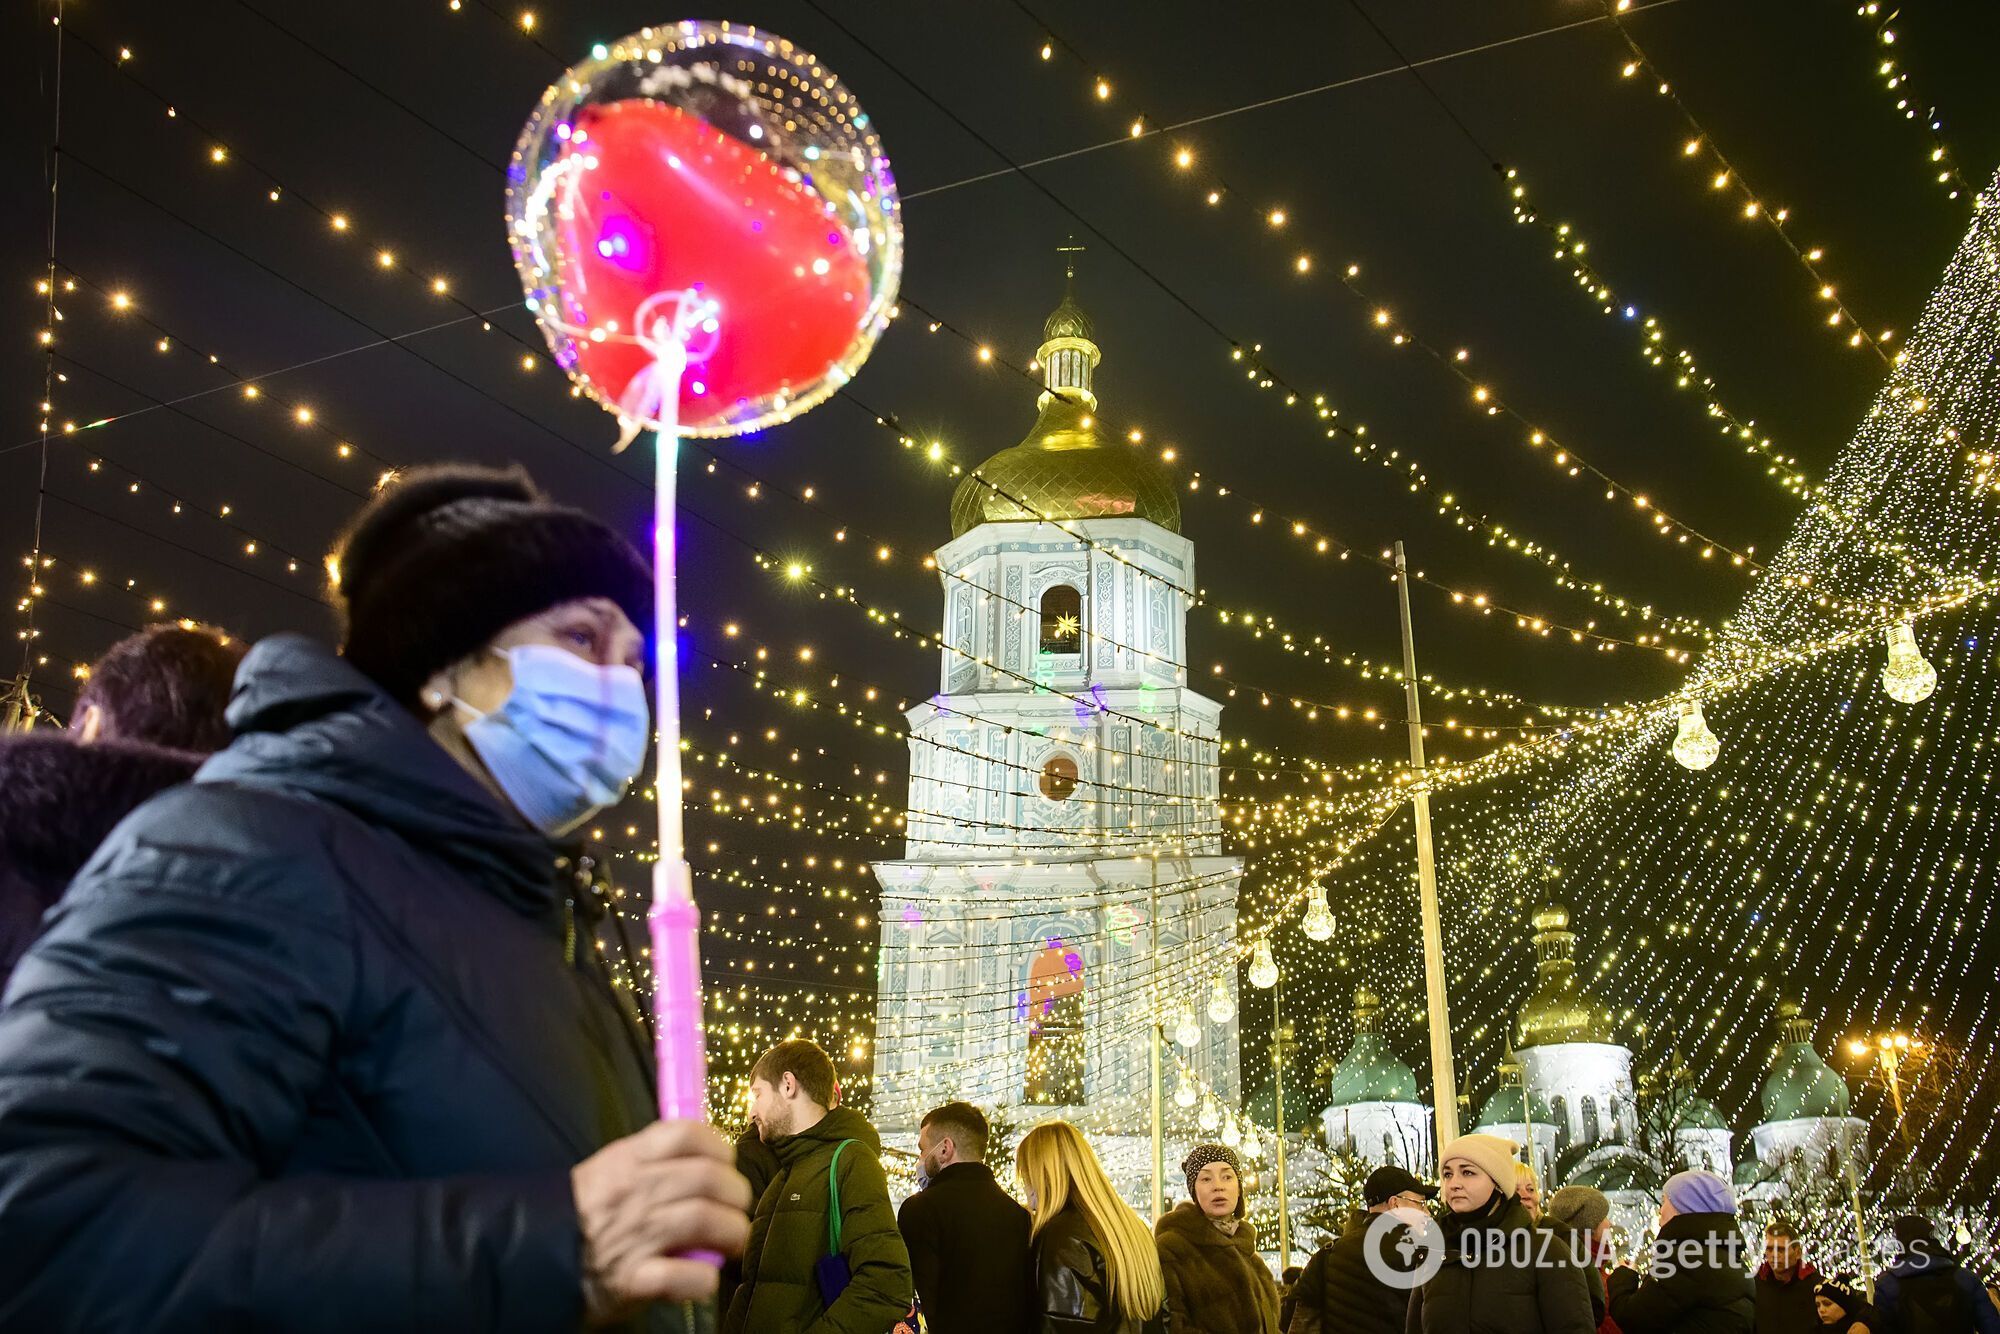 Украинцы массово нарушают противоэпидемические нормы во время новогодних празднований